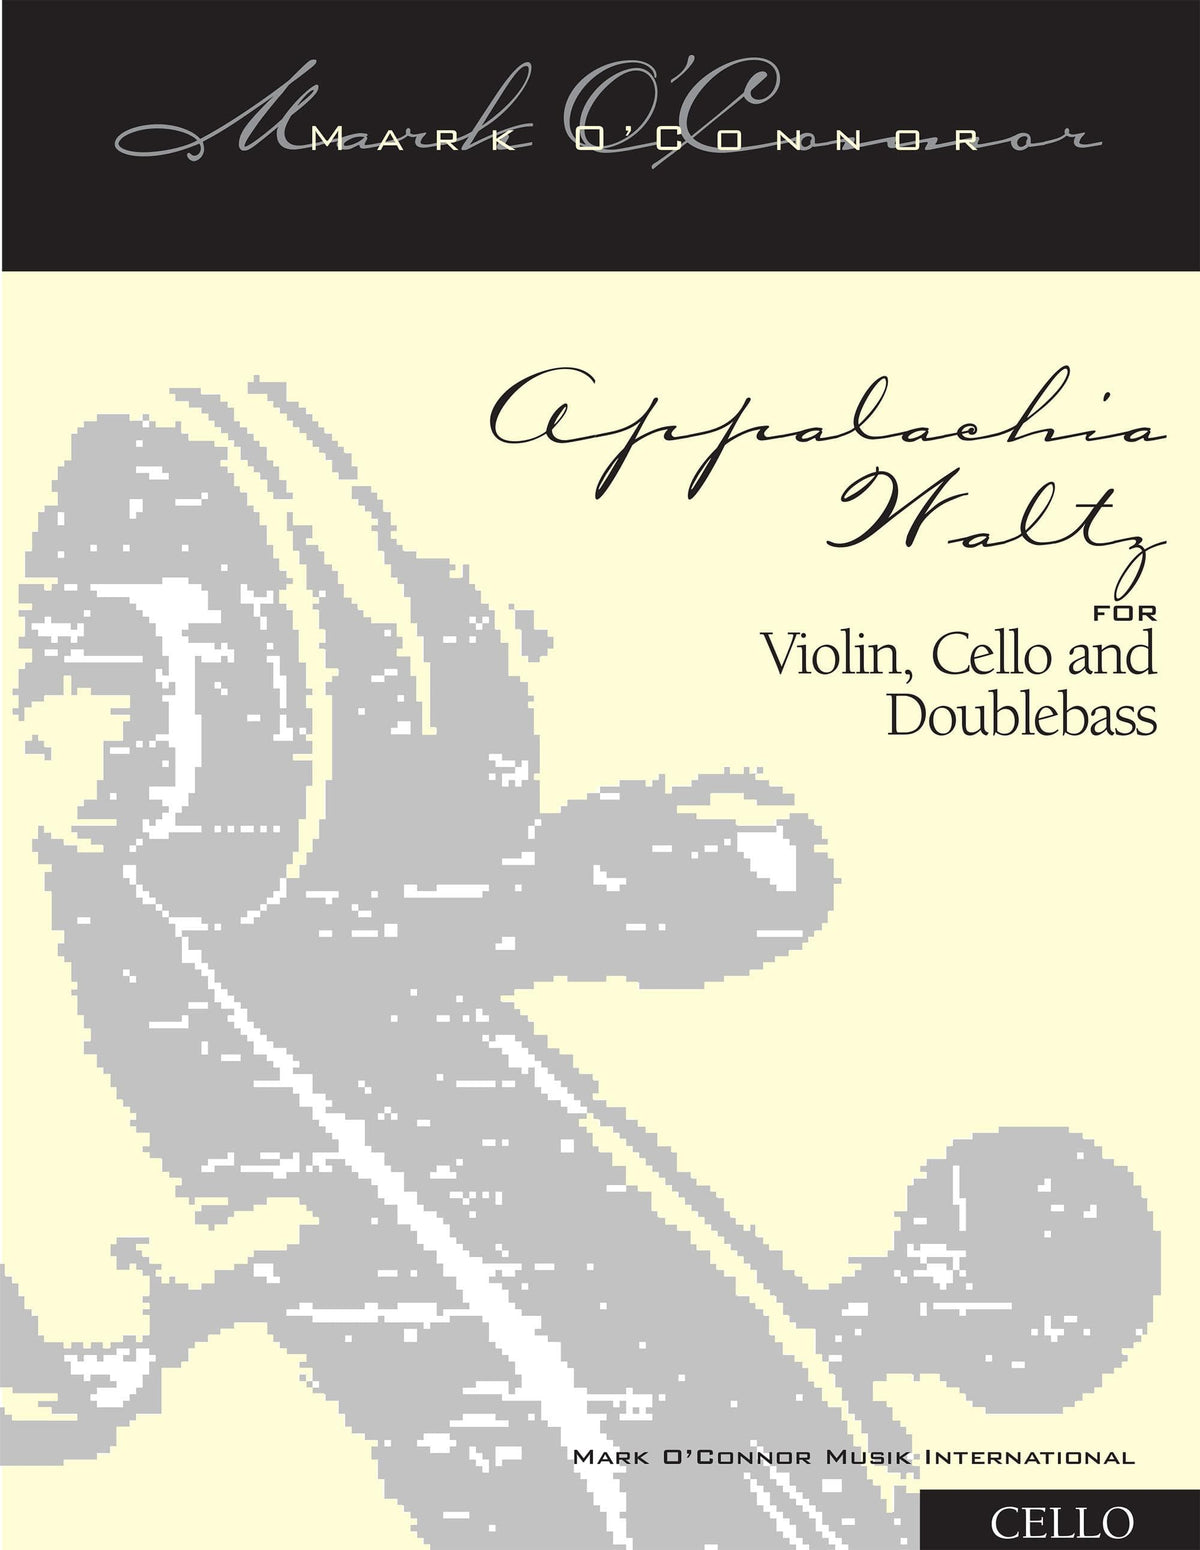 O'Connor, Mark - Appalachia Waltz for Violin, Cello, and Bass - Cello - Digital Download